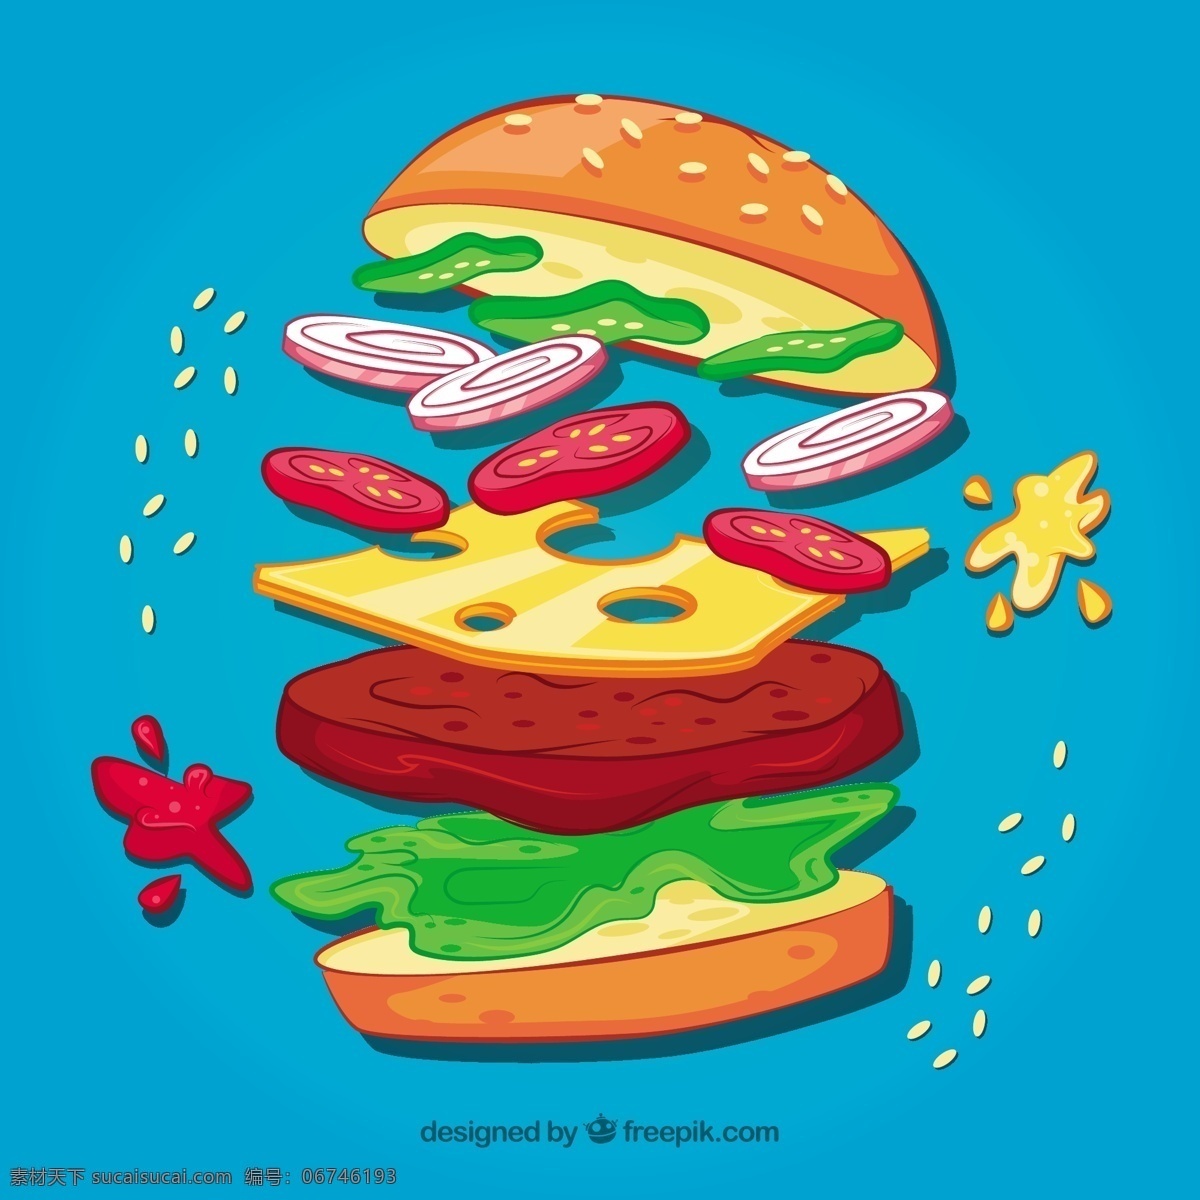 食 材 美味 汉堡 蓝色 背景 食物 菜单 颜色 扁平 丰富多彩 快餐 平面设计 食物菜单 奶酪 汉堡包 番茄 午餐 小吃 餐